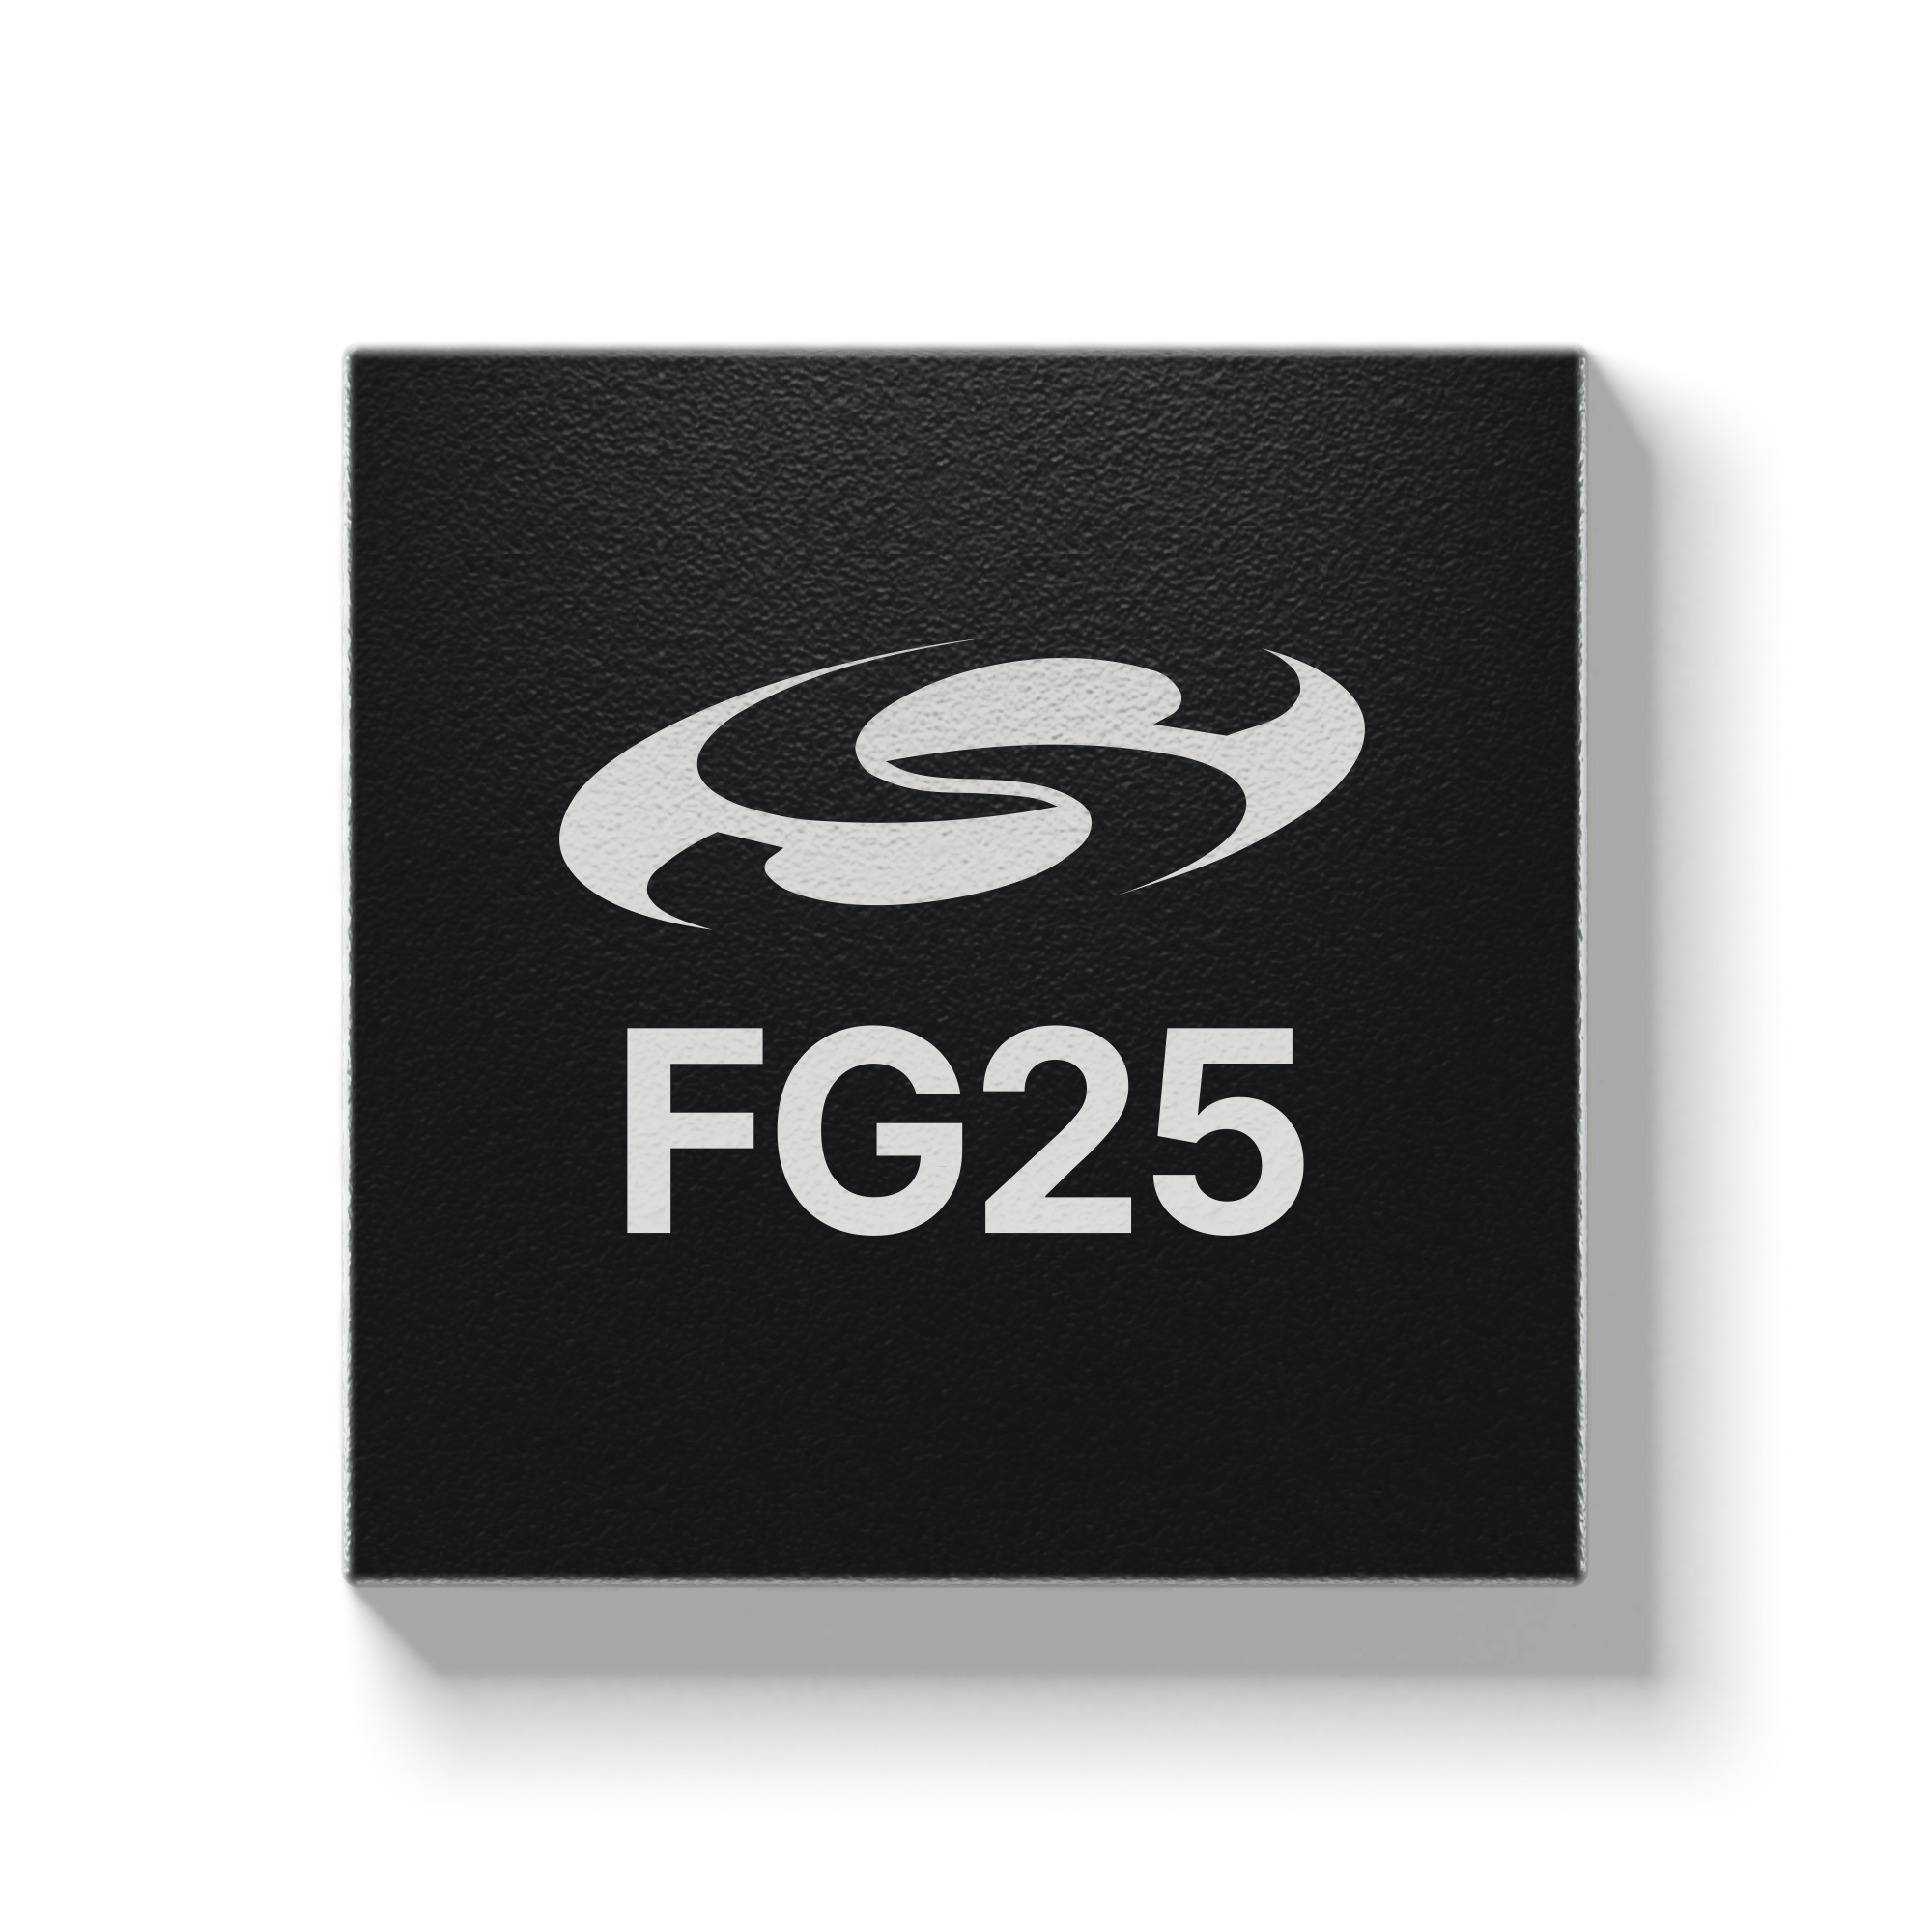 FG25